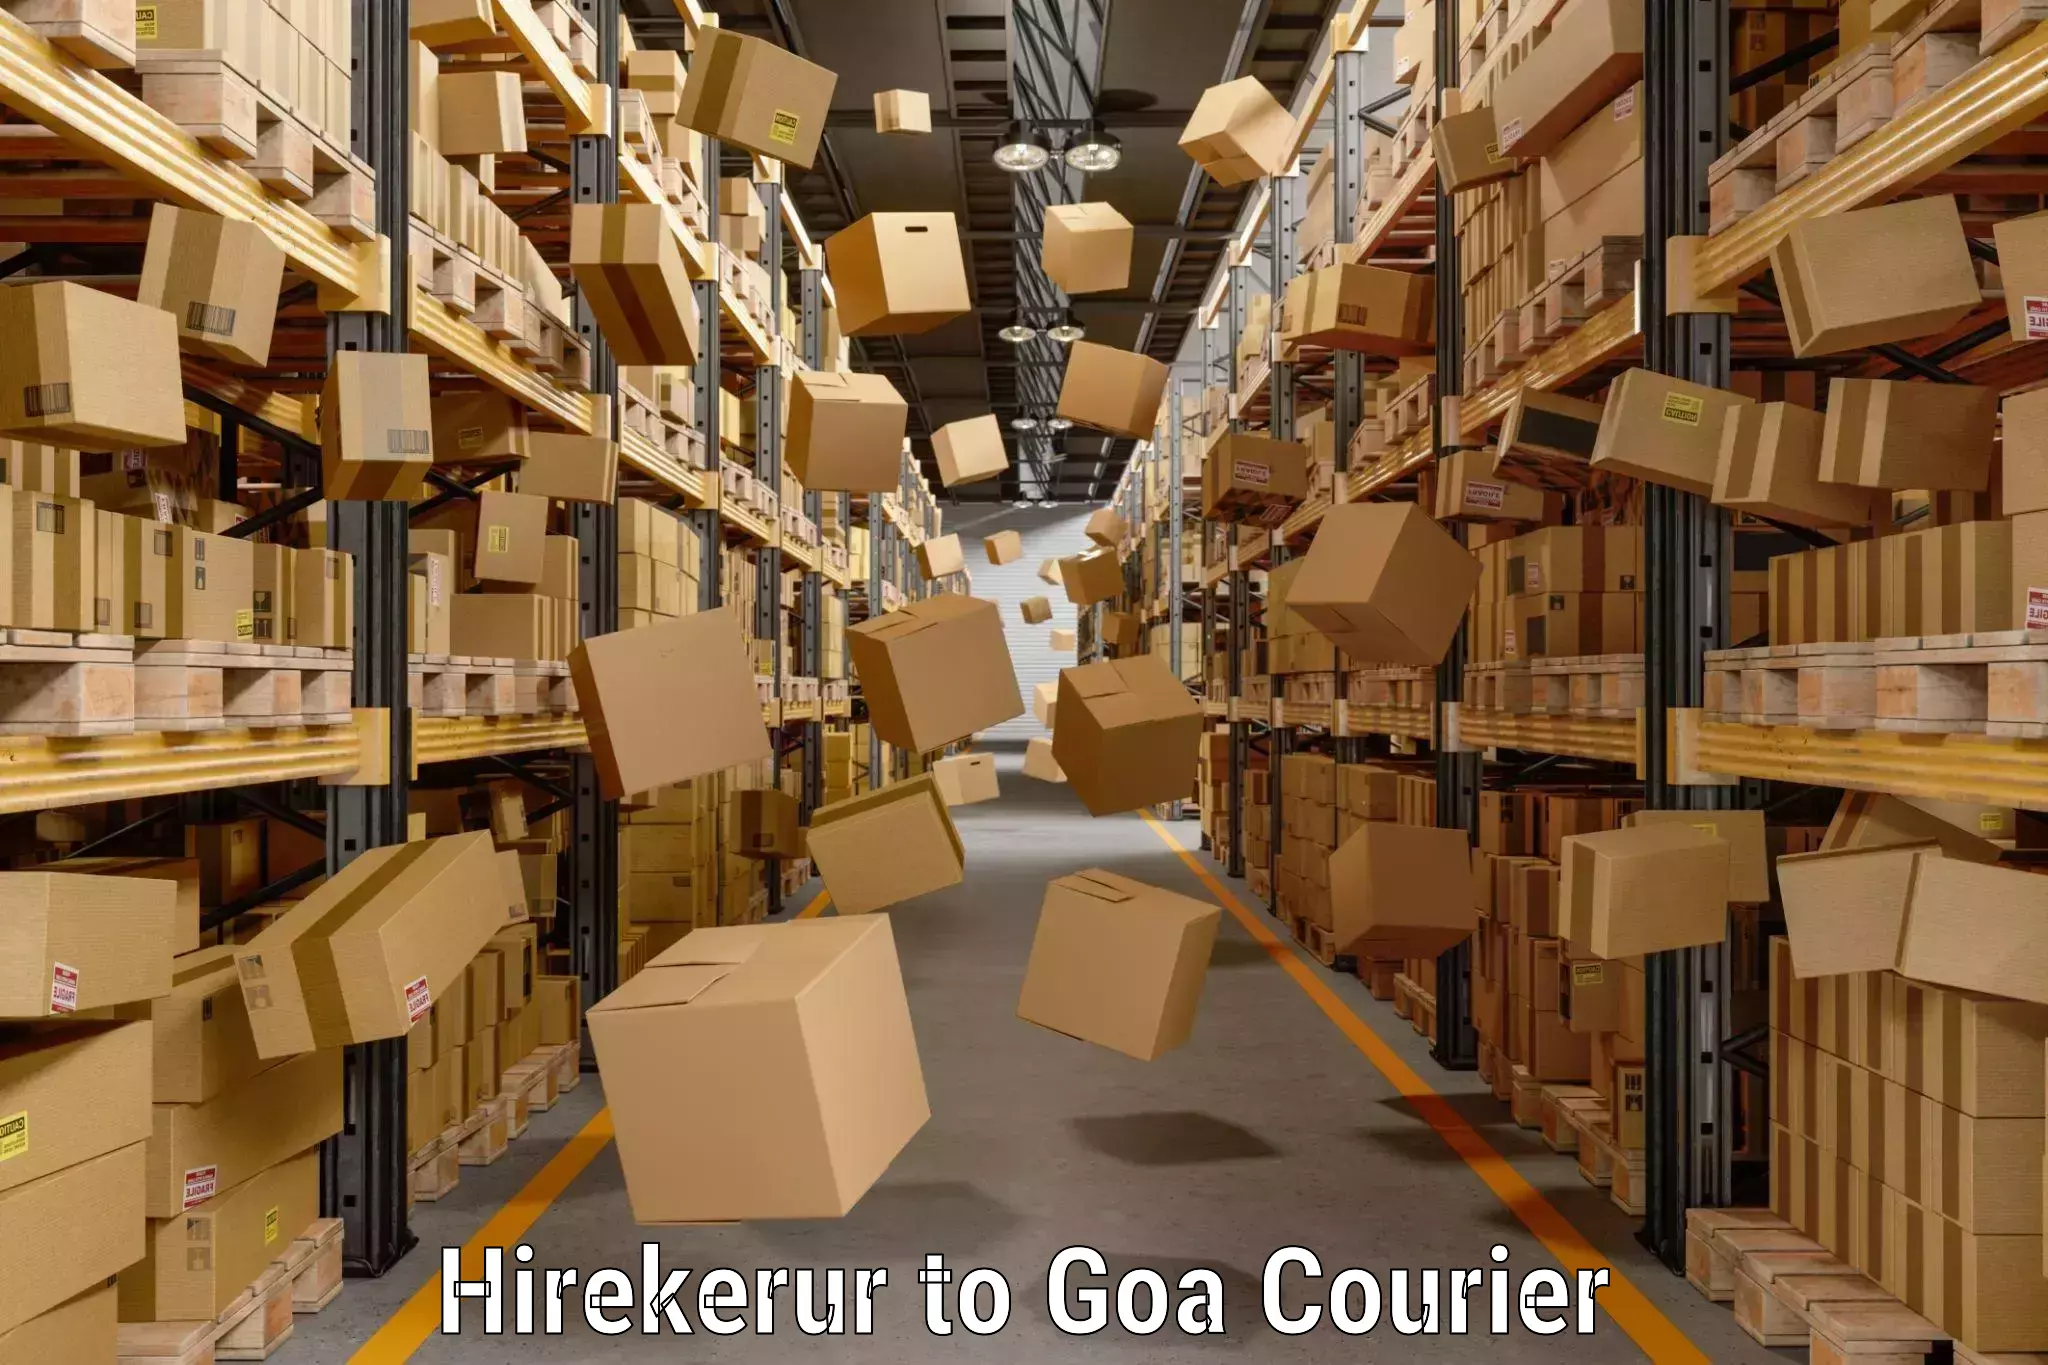 Automated luggage transport Hirekerur to Goa